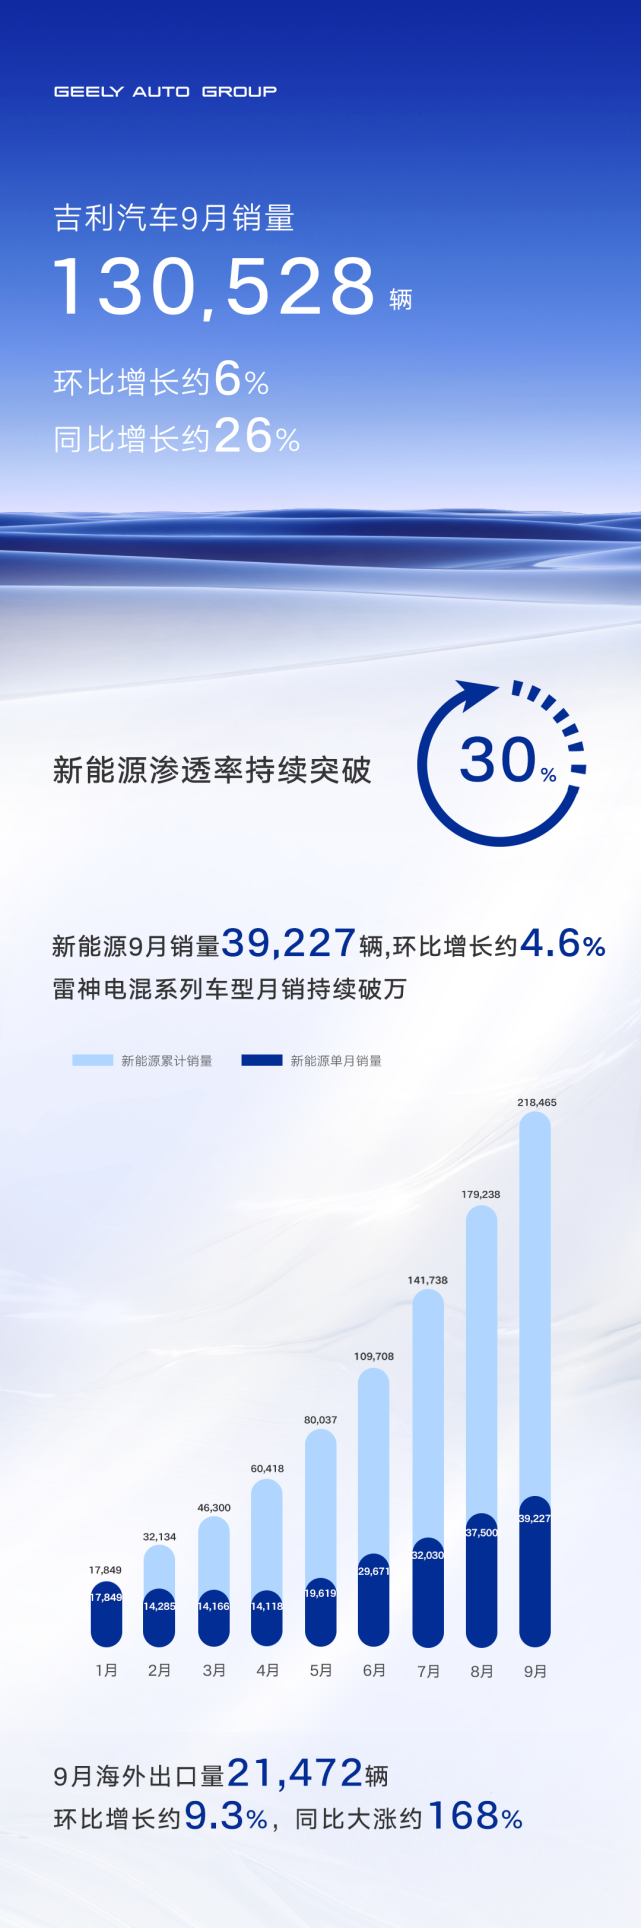 新能源渗透率持续突破30% 领克海外出运量领跑中国高端品牌吉利汽车9月销量130528辆